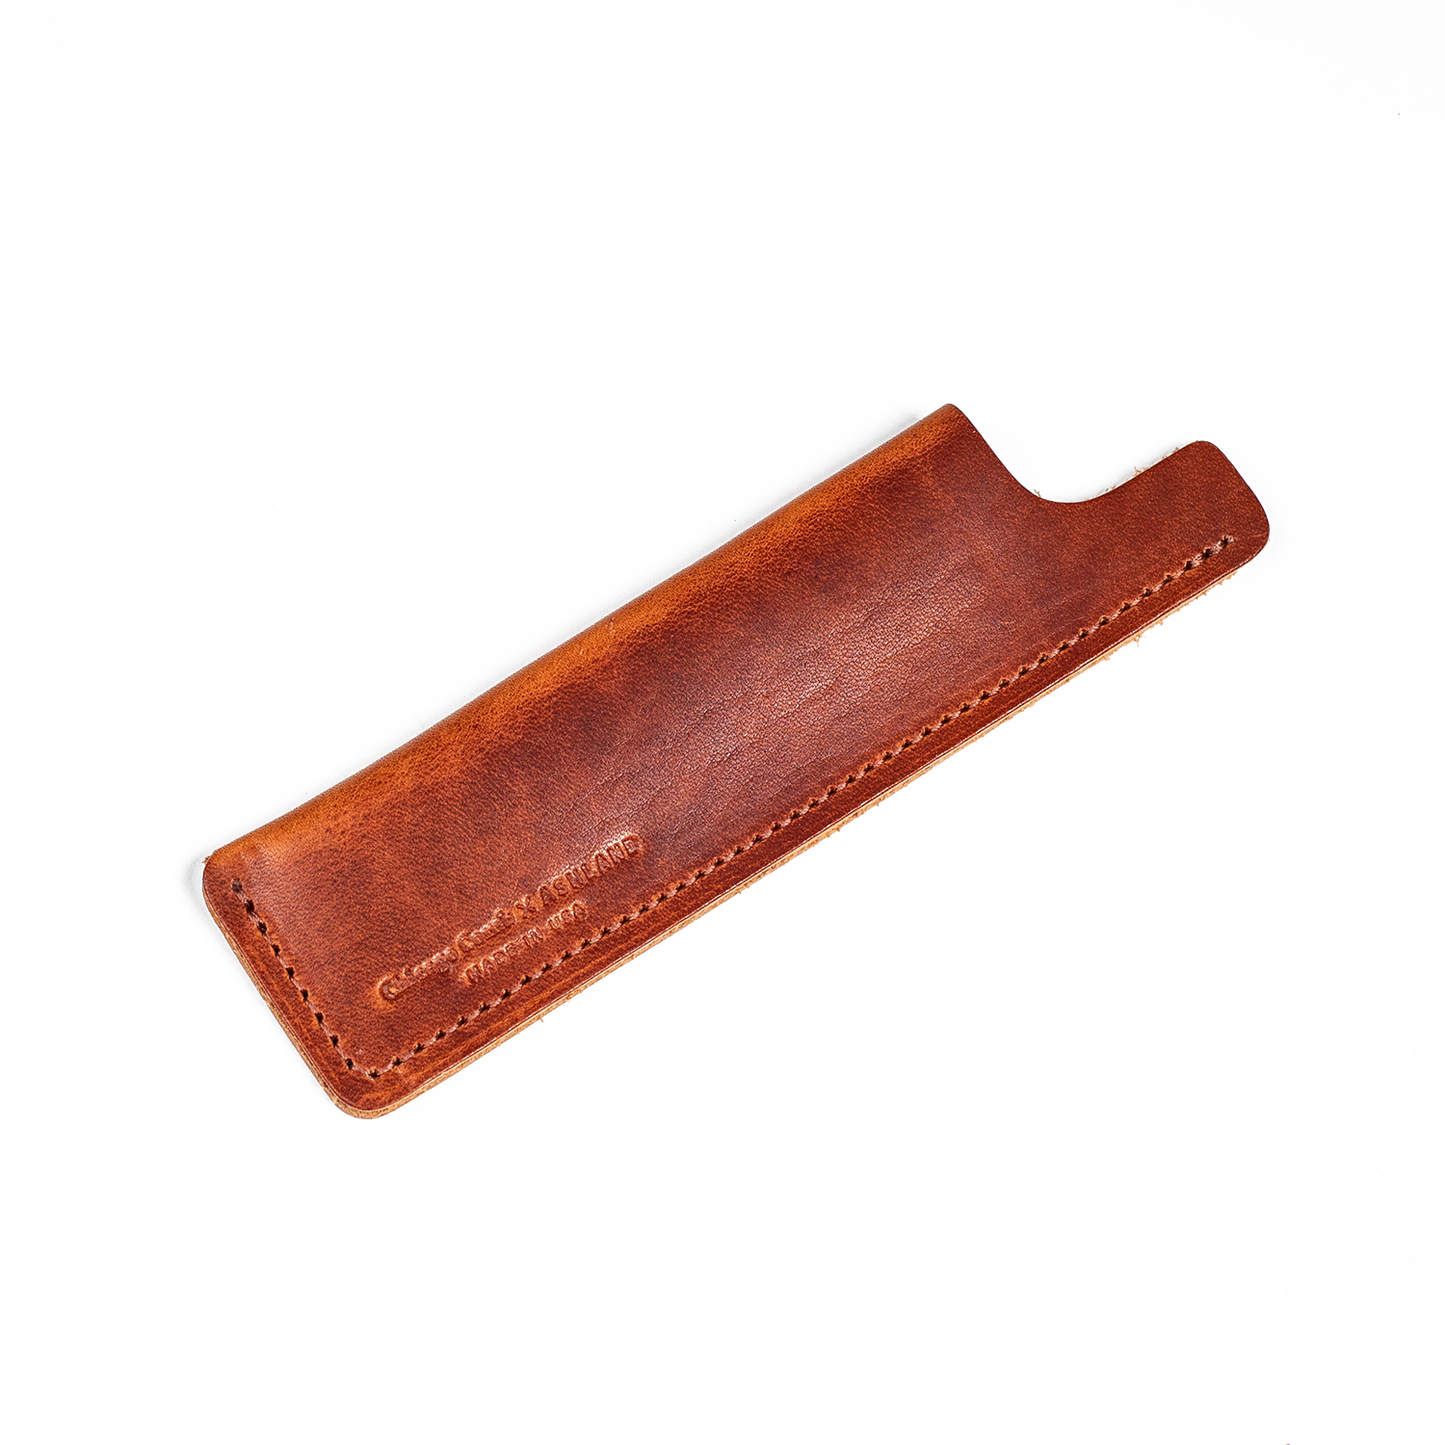 ashland leather comb sheath